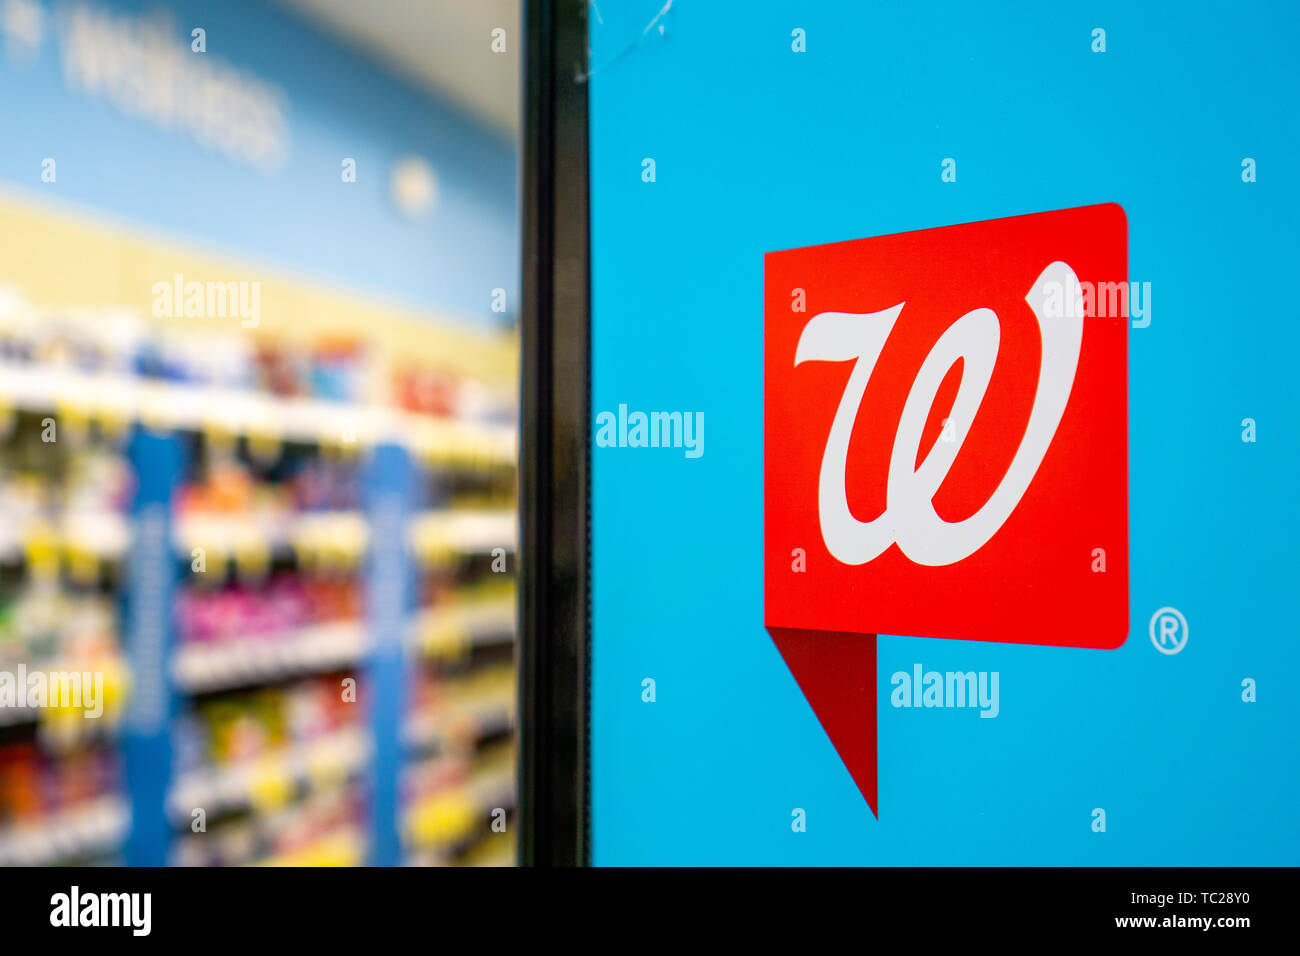 Giugno 1, 2019 Sunnyvale / CA / STATI UNITI D'AMERICA - Walgreens logo all'interno di uno dei negozi Foto Stock